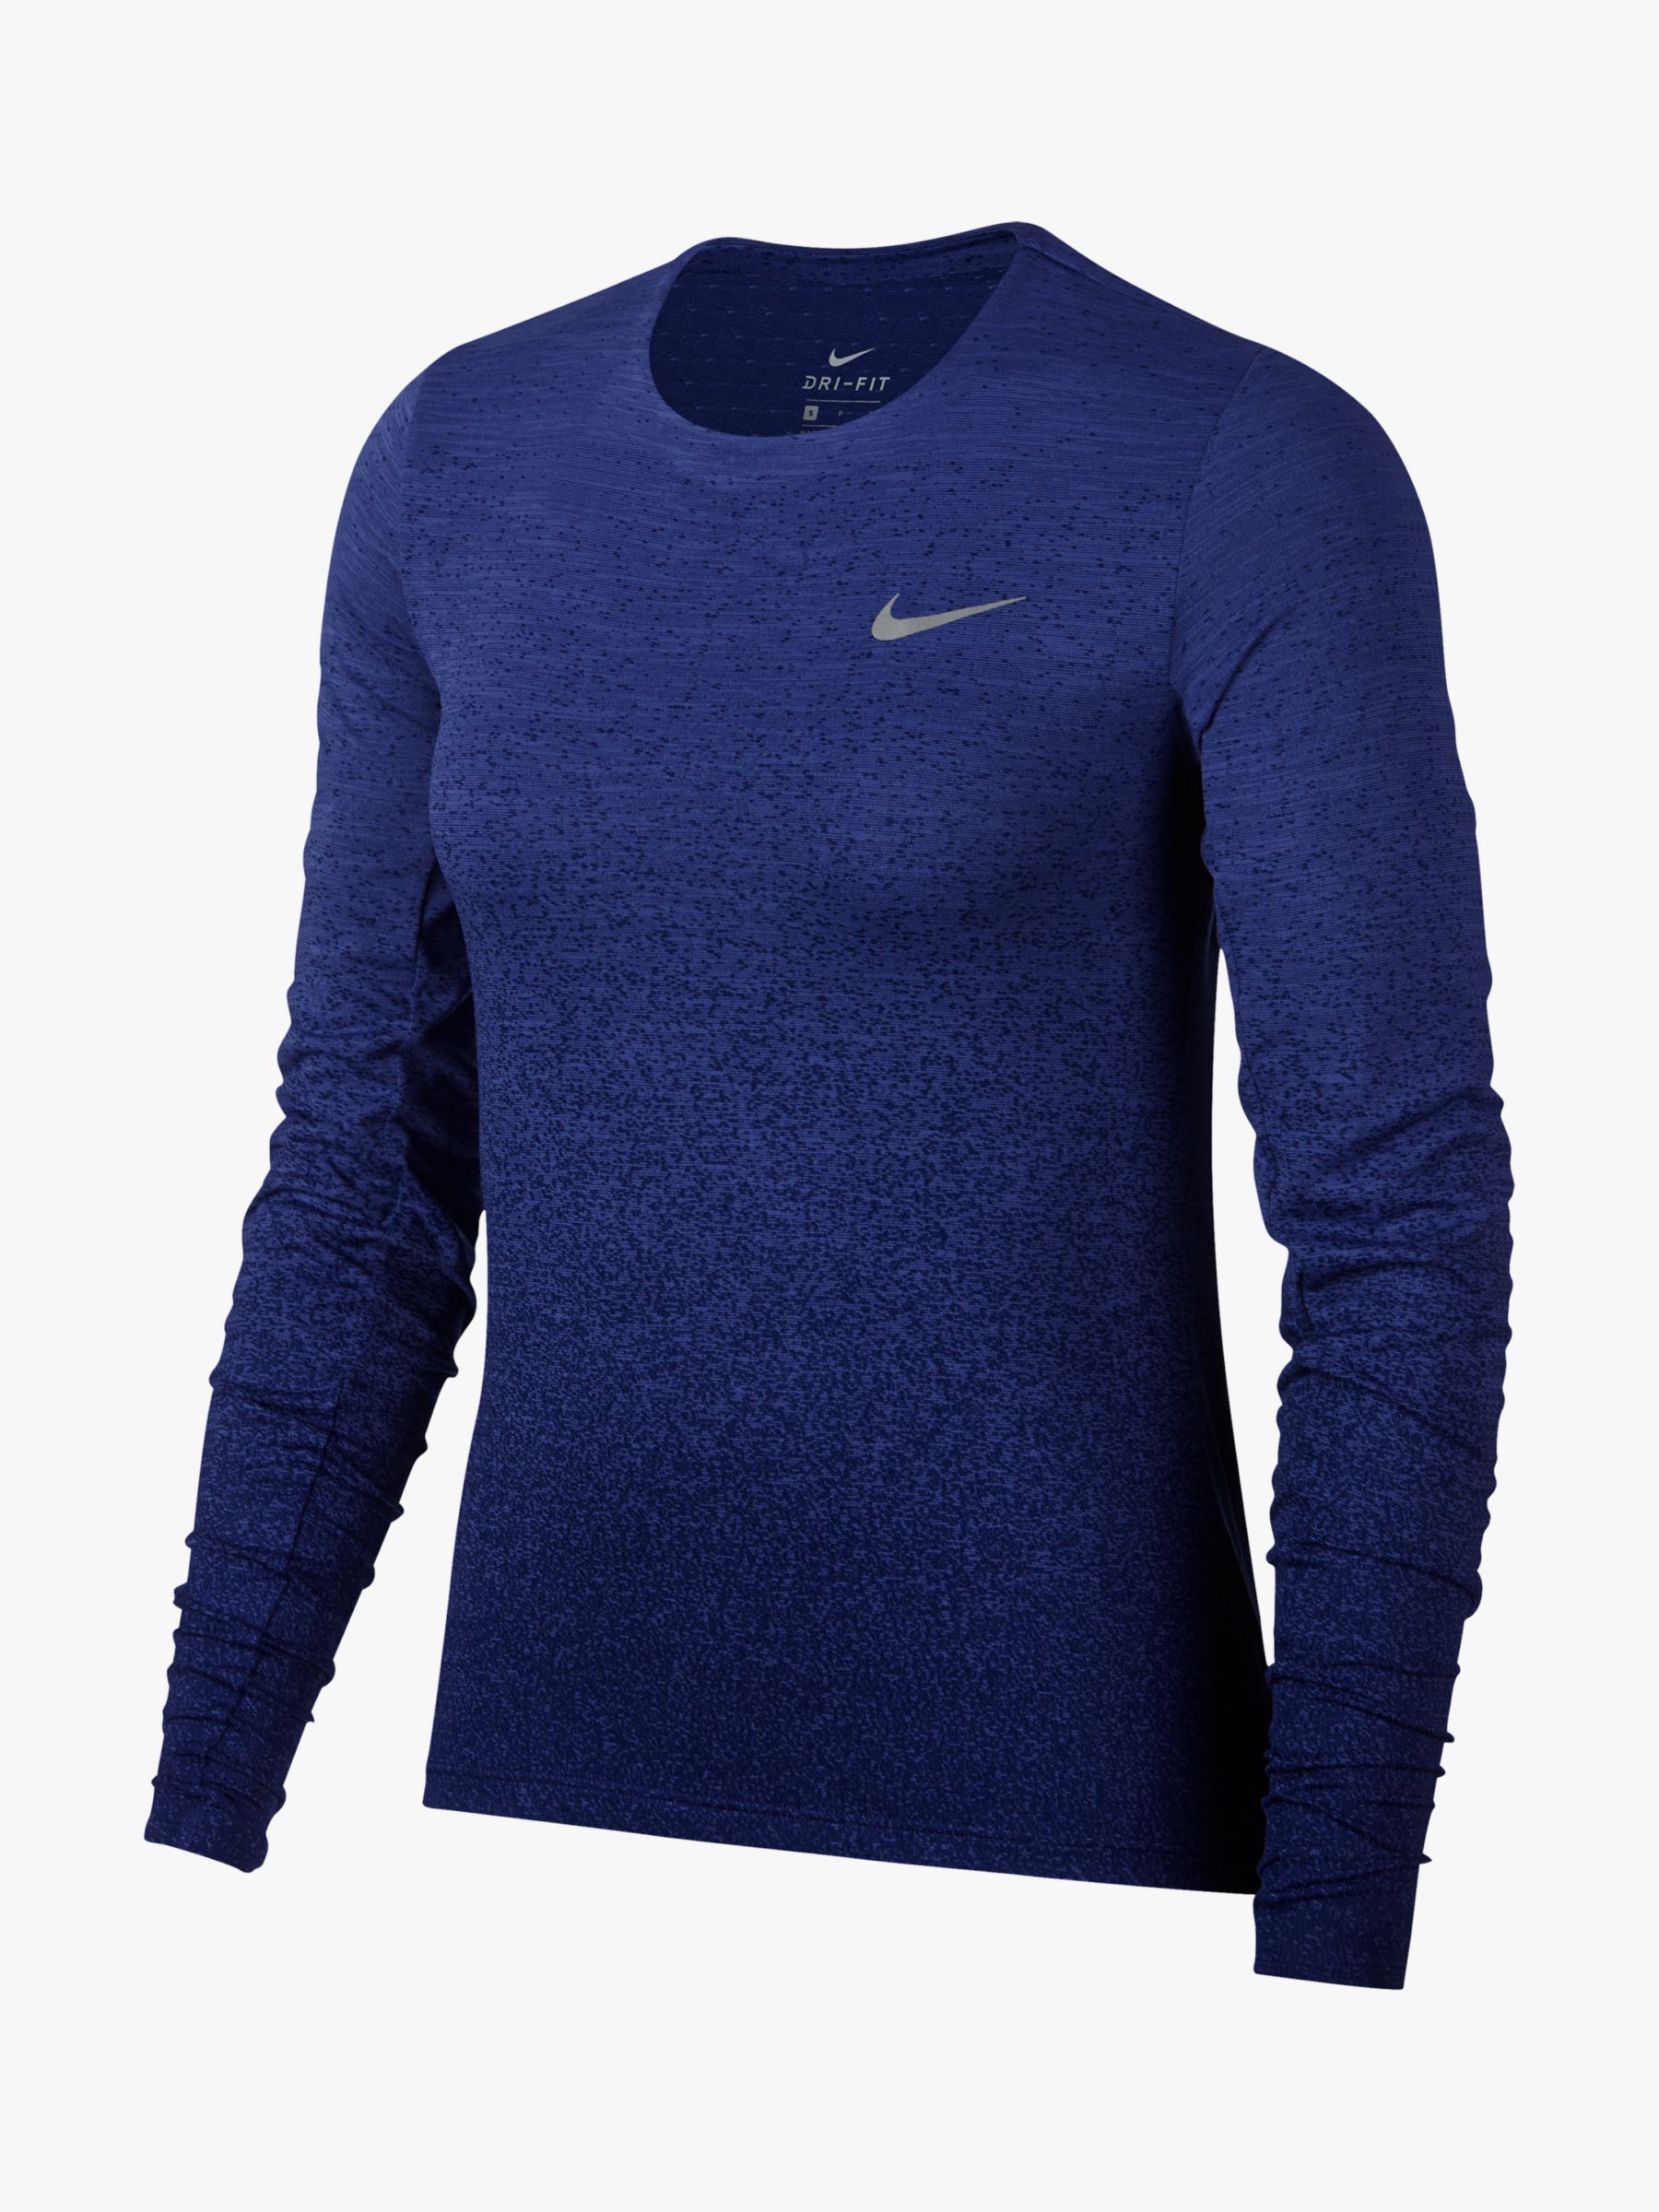 Nike Medalist Long Sleeve Running Top, Rush Violet